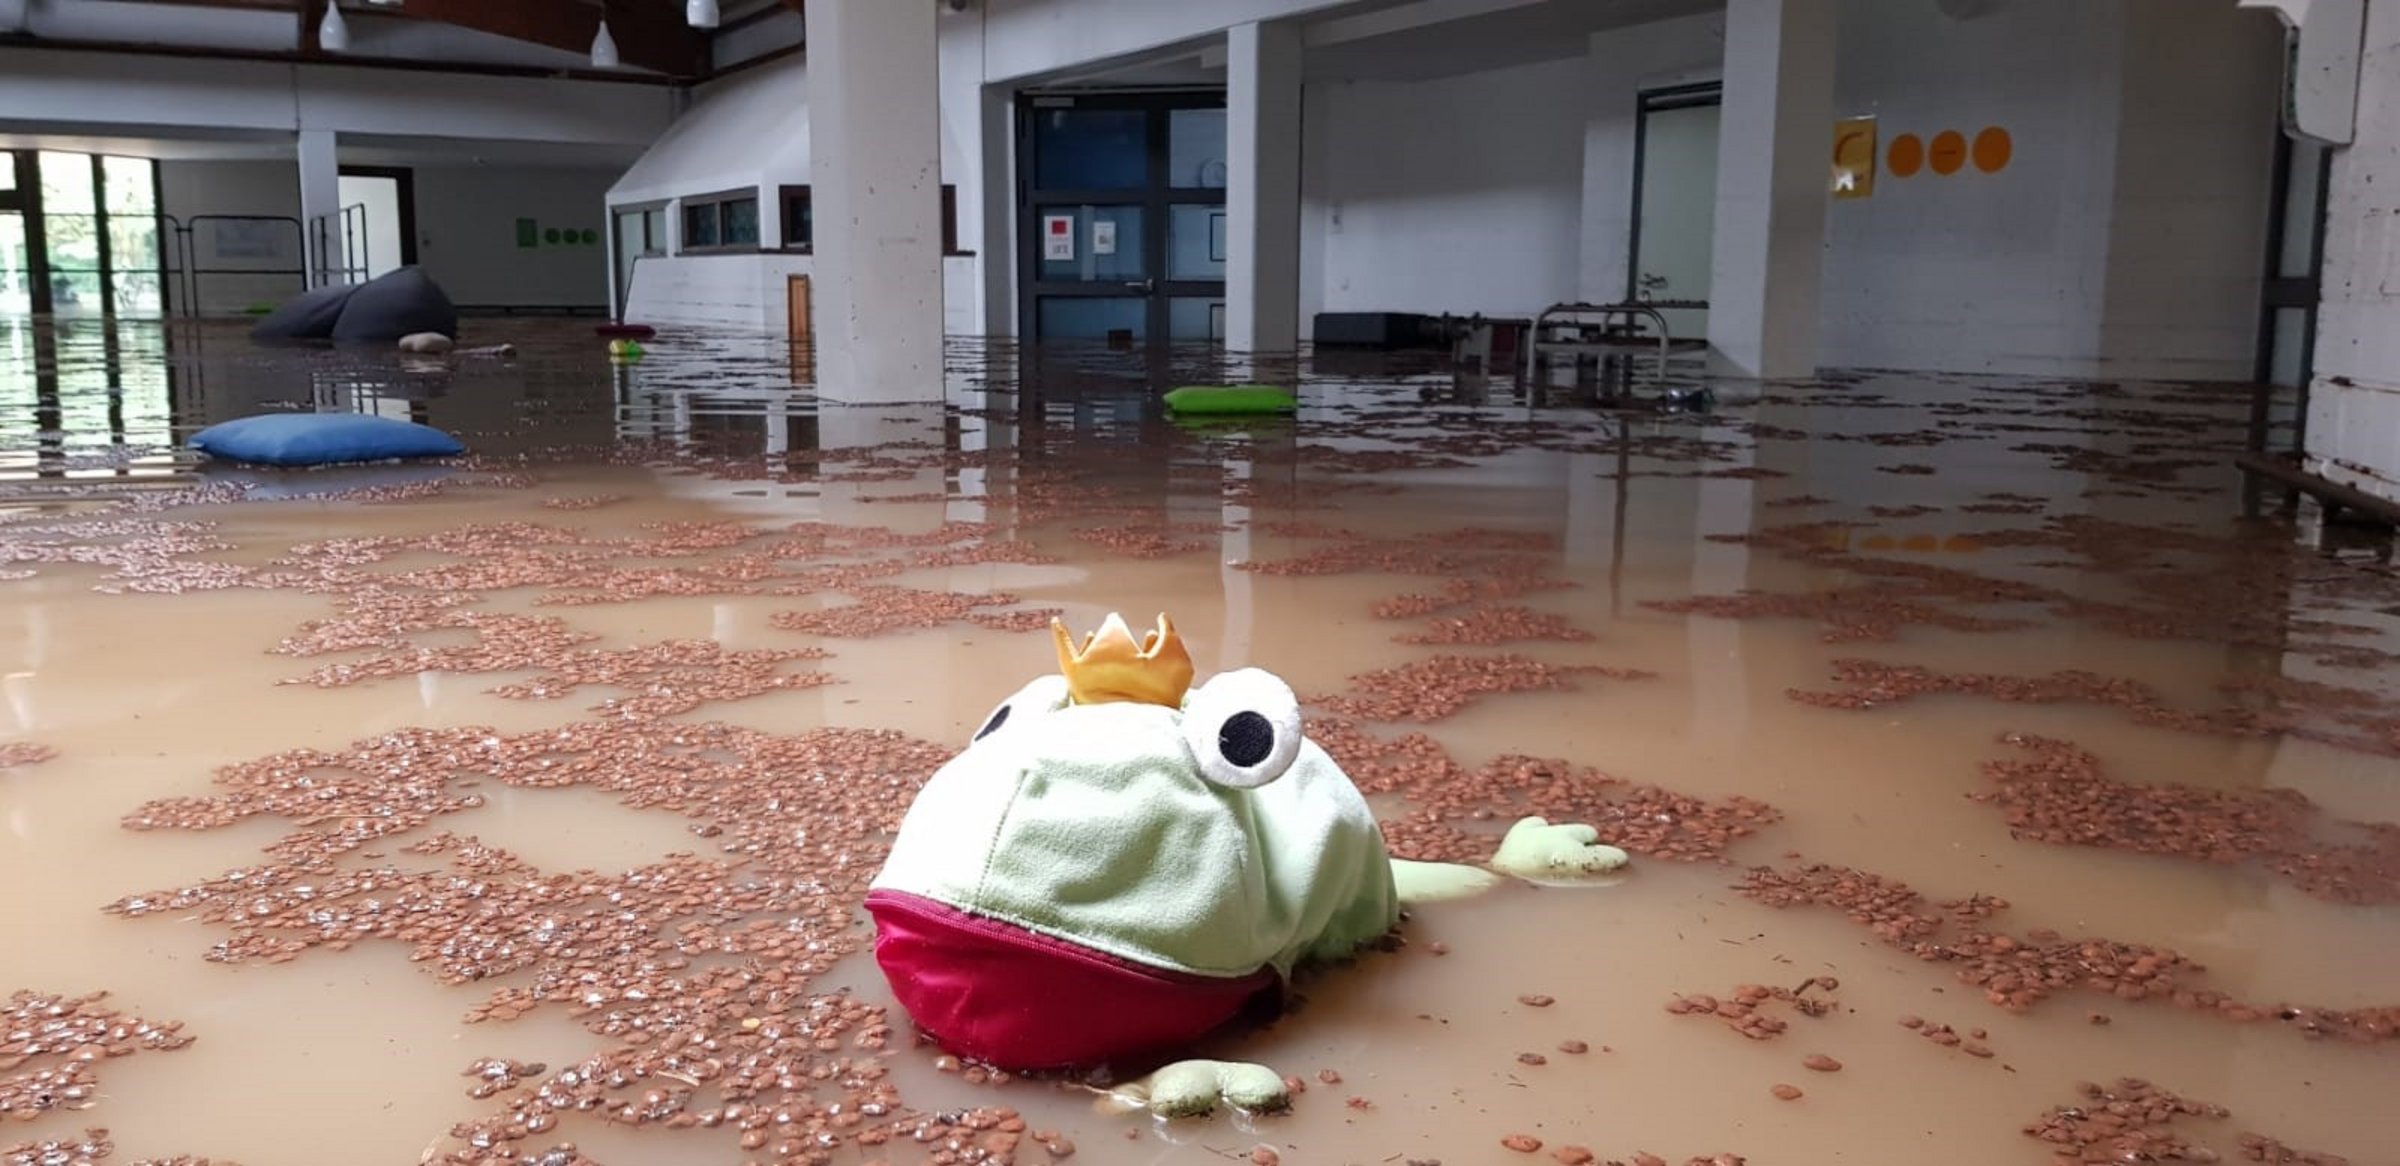 Überschwemmungen an der LVR-Paul-Klee Schule in Leichlingen